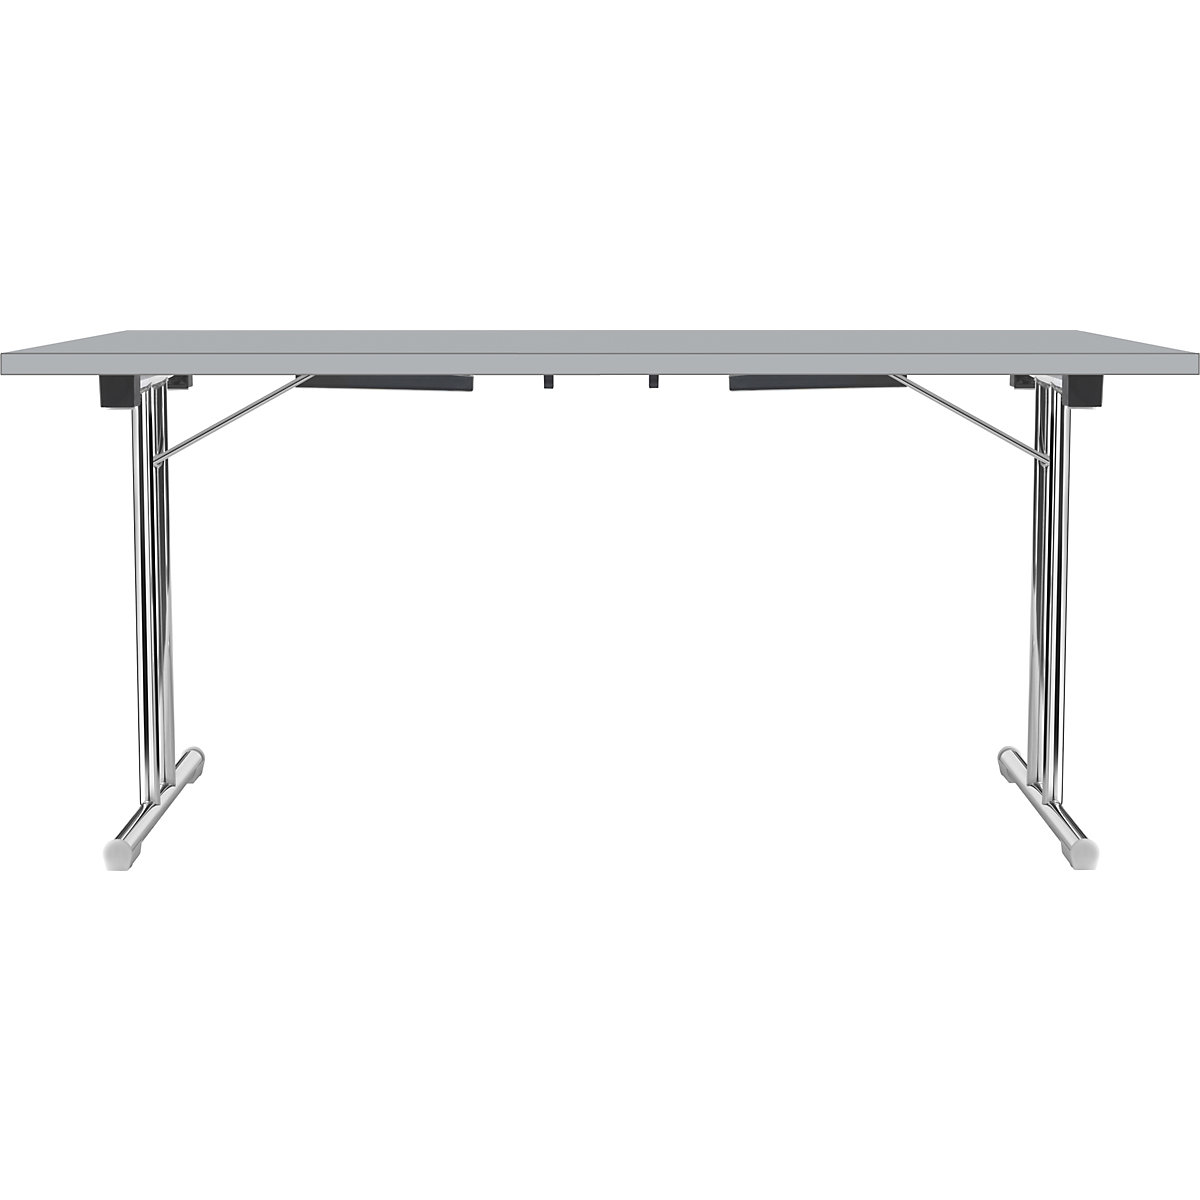 Inklapbare tafel met dubbel T-vormig onderstel, frame van staalbuis, verchroomd, lichtgrijs/lichtgrijs, b x d = 1400 x 700 mm-15